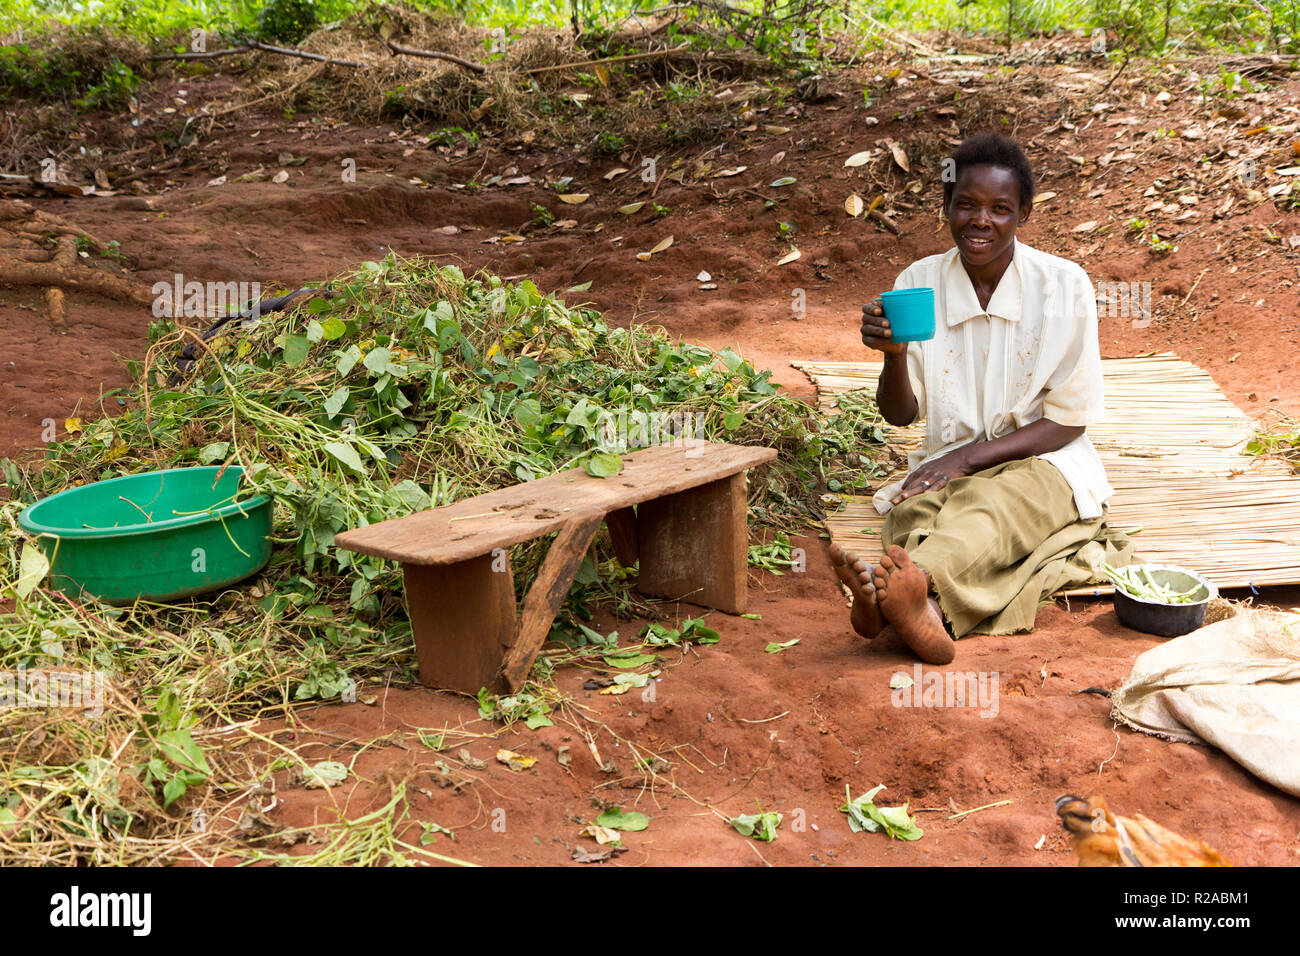 Una mujer africana sentada en la tierra rojiza, gachas de beber de una taza. Junto a ella una pila de frijoles verdes descascarillado. Foto de stock